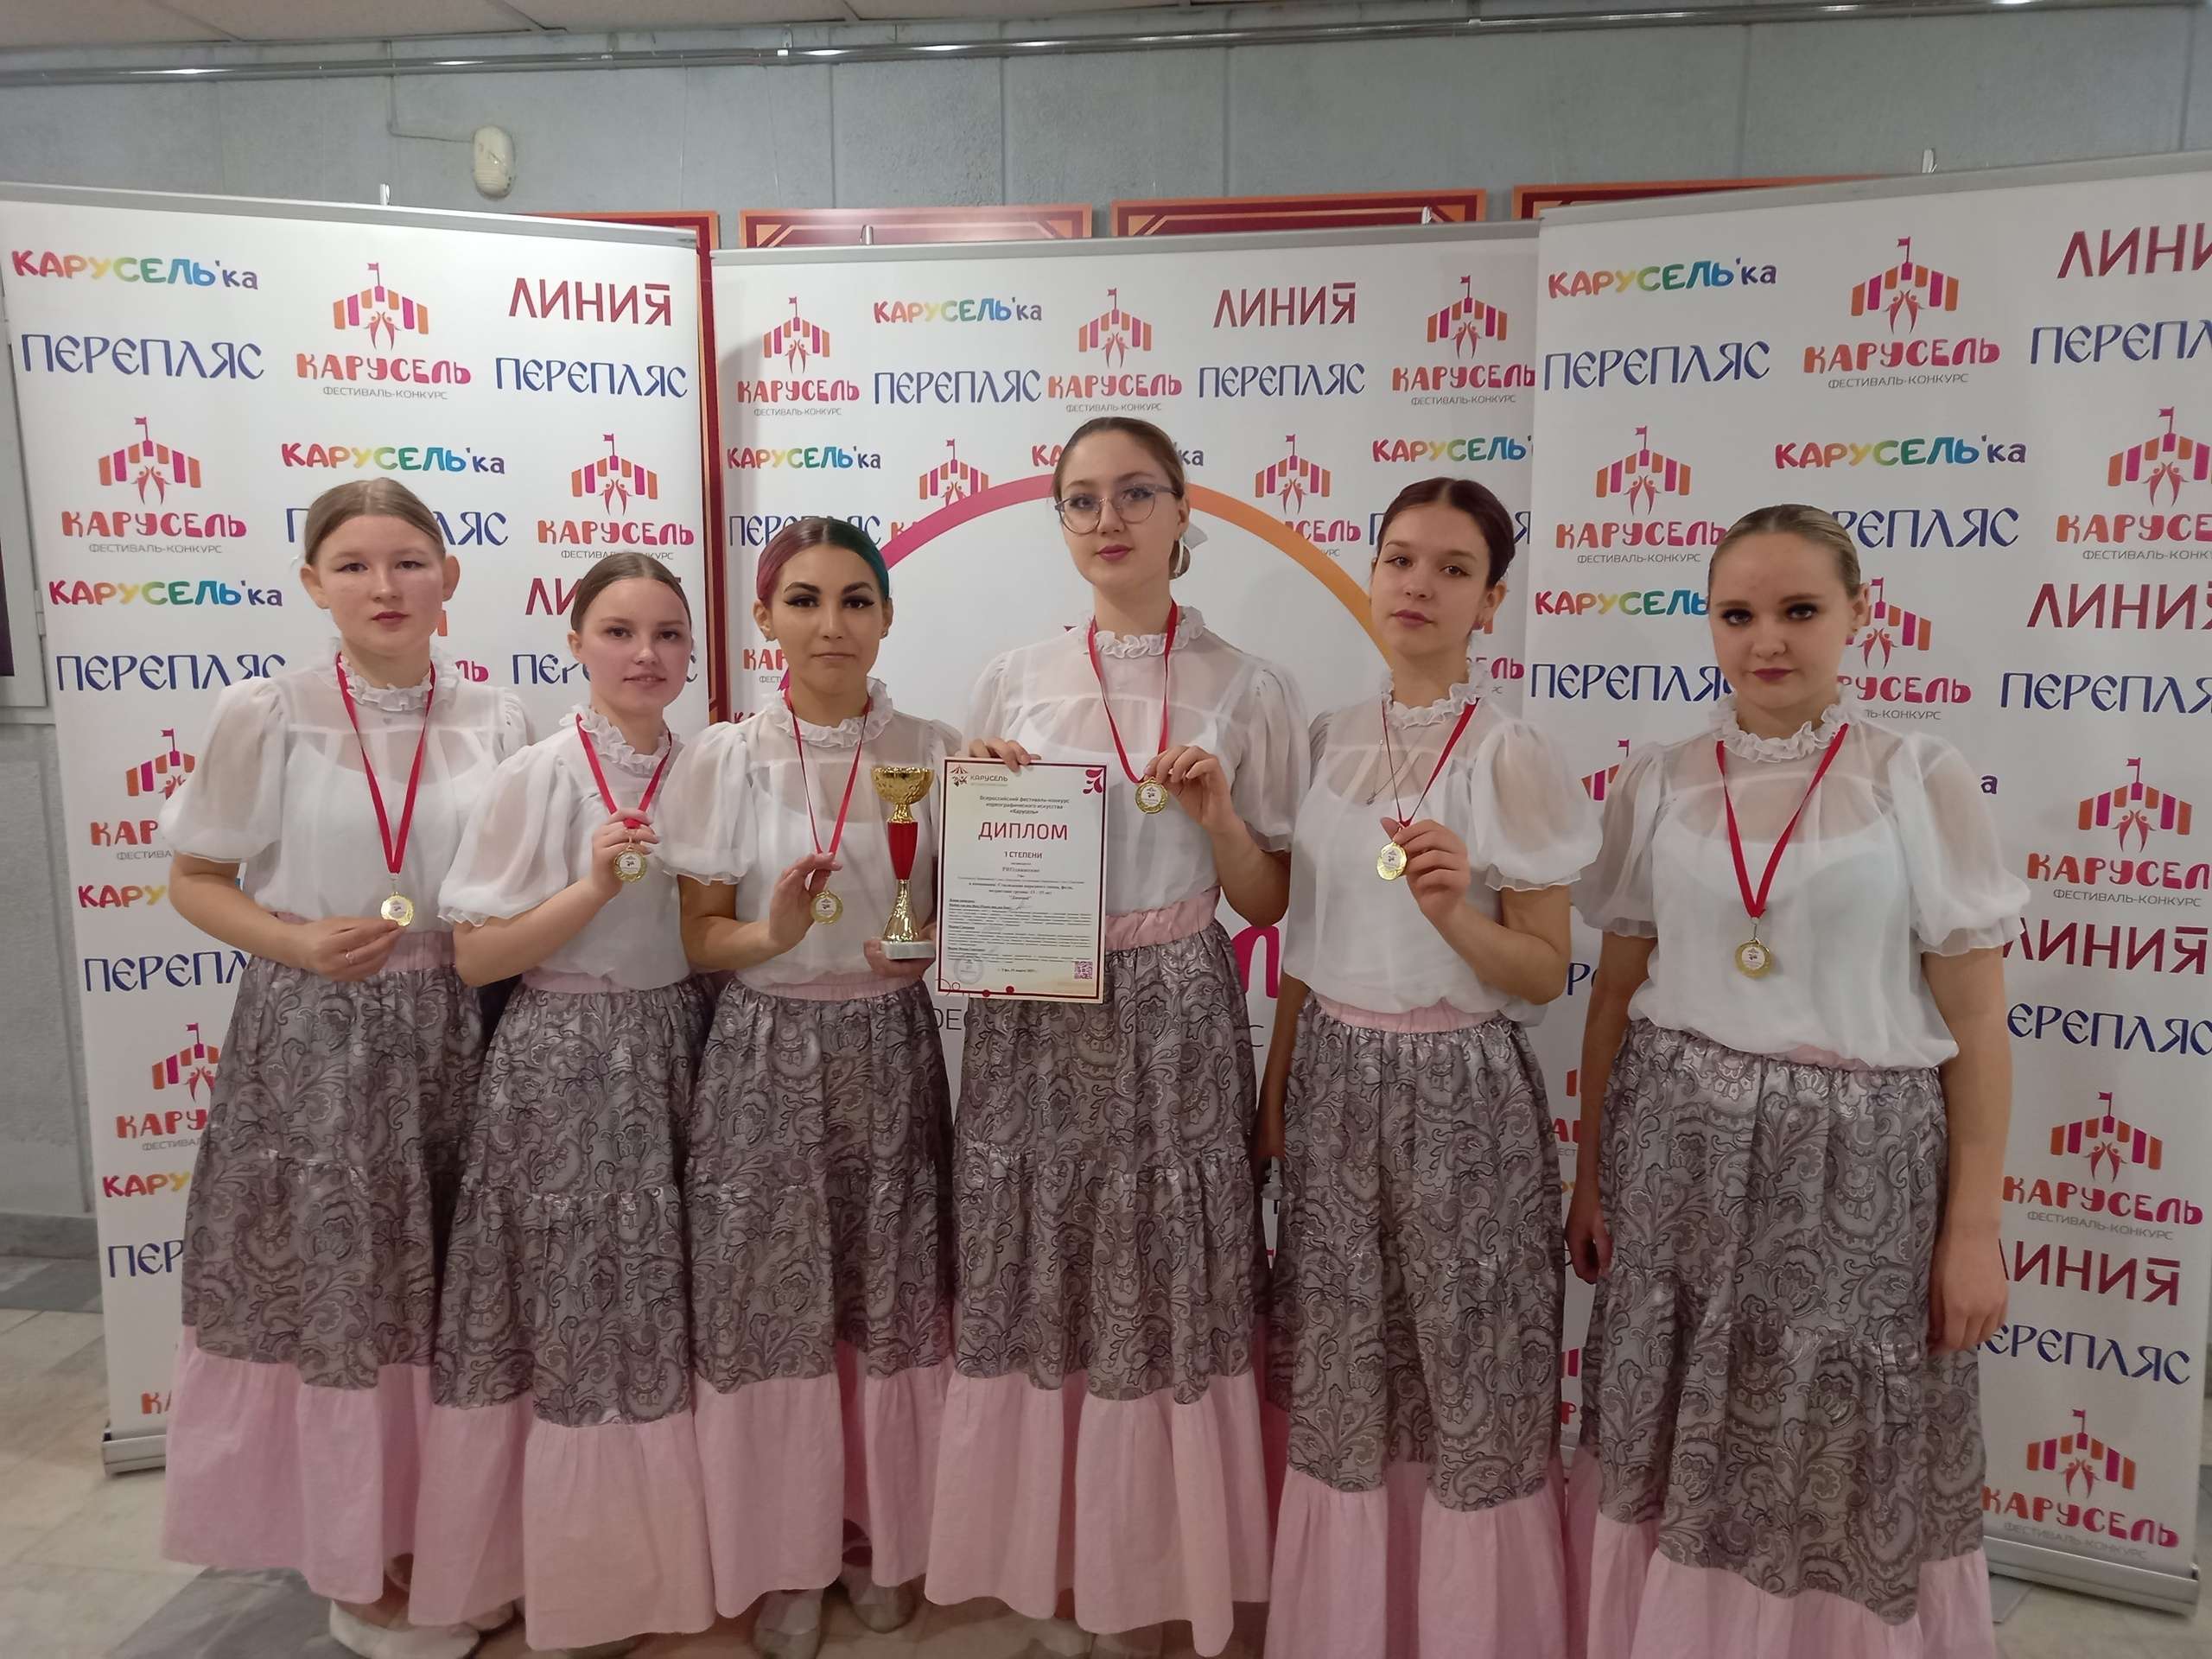 19 марта старшая группа танцевальной студии " PROдвижение" приняла участие во всероссийском танцевальном конкурсе  "Карусель" и стала дипломантом 1 степени